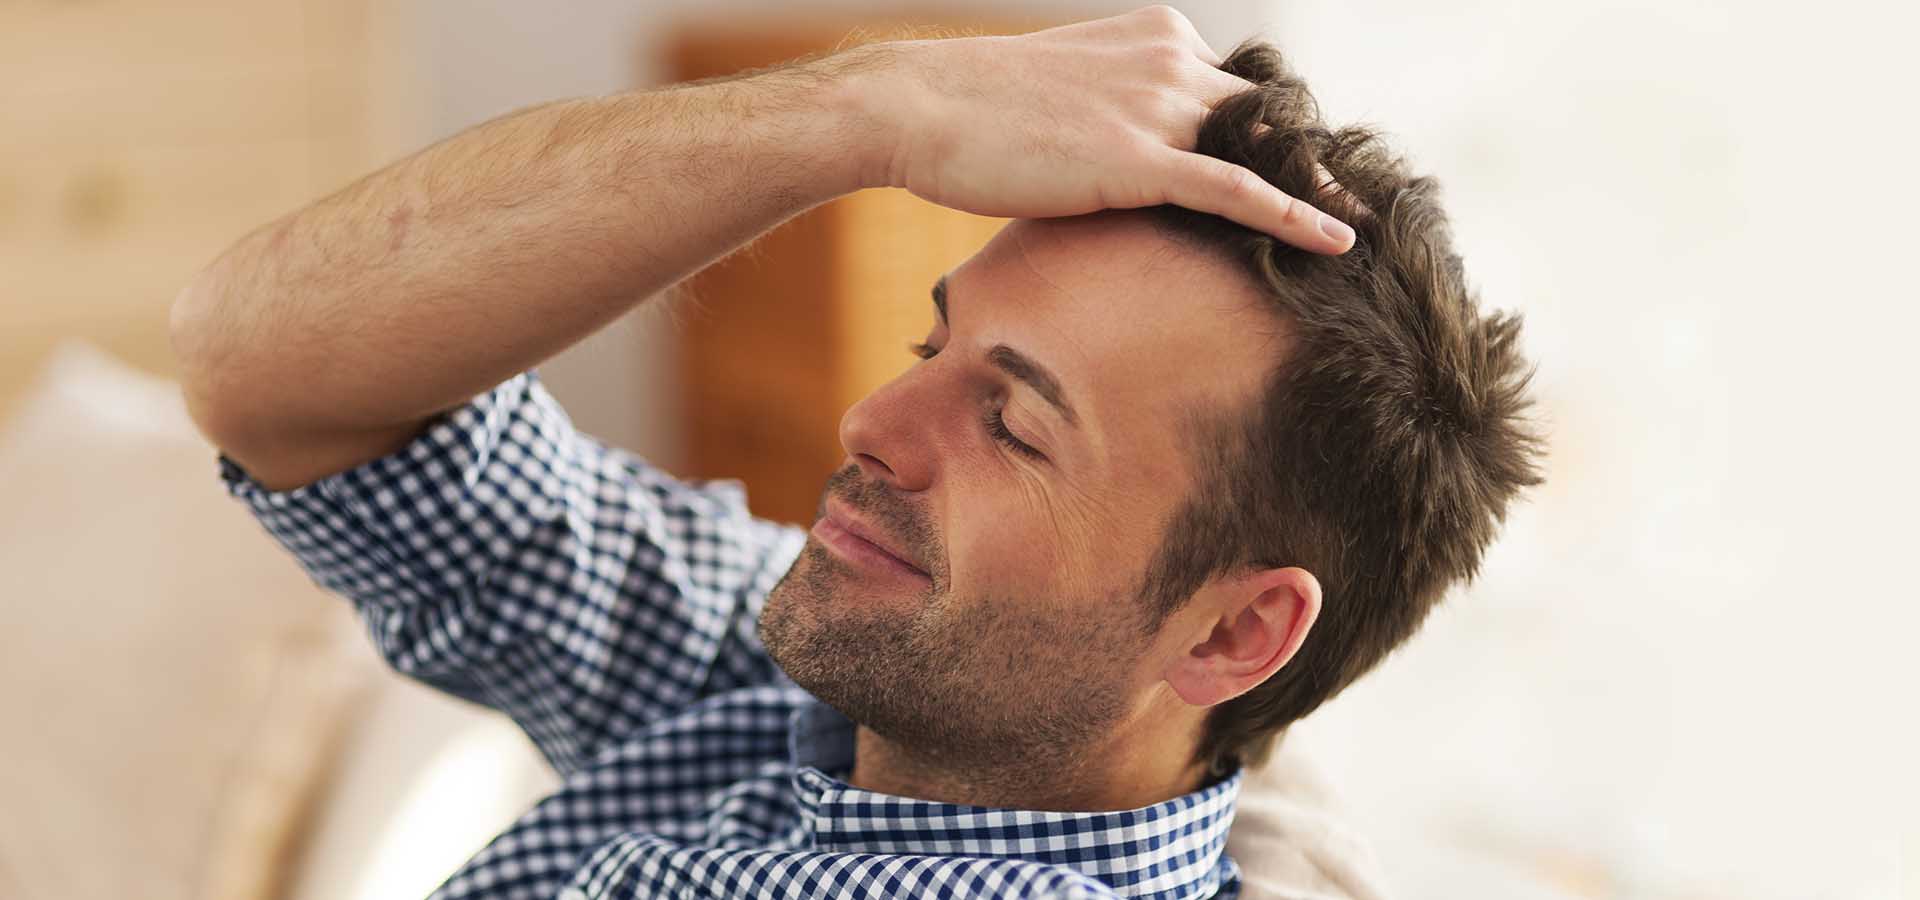 10 راهبرد پرپشت شدن مو برای آقایان